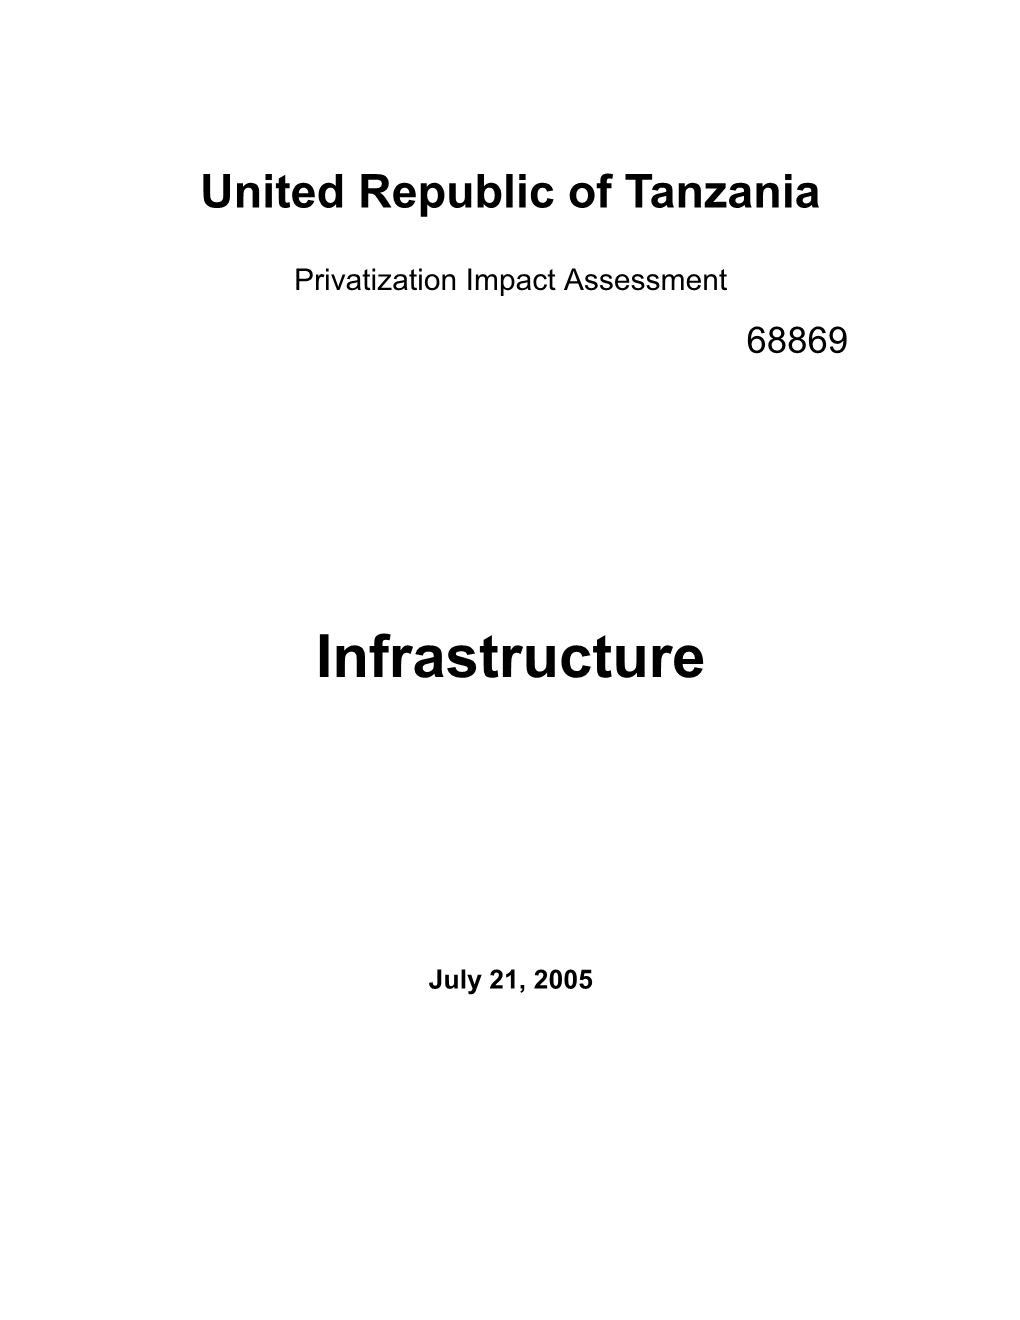 United Republic of Tanzania s1